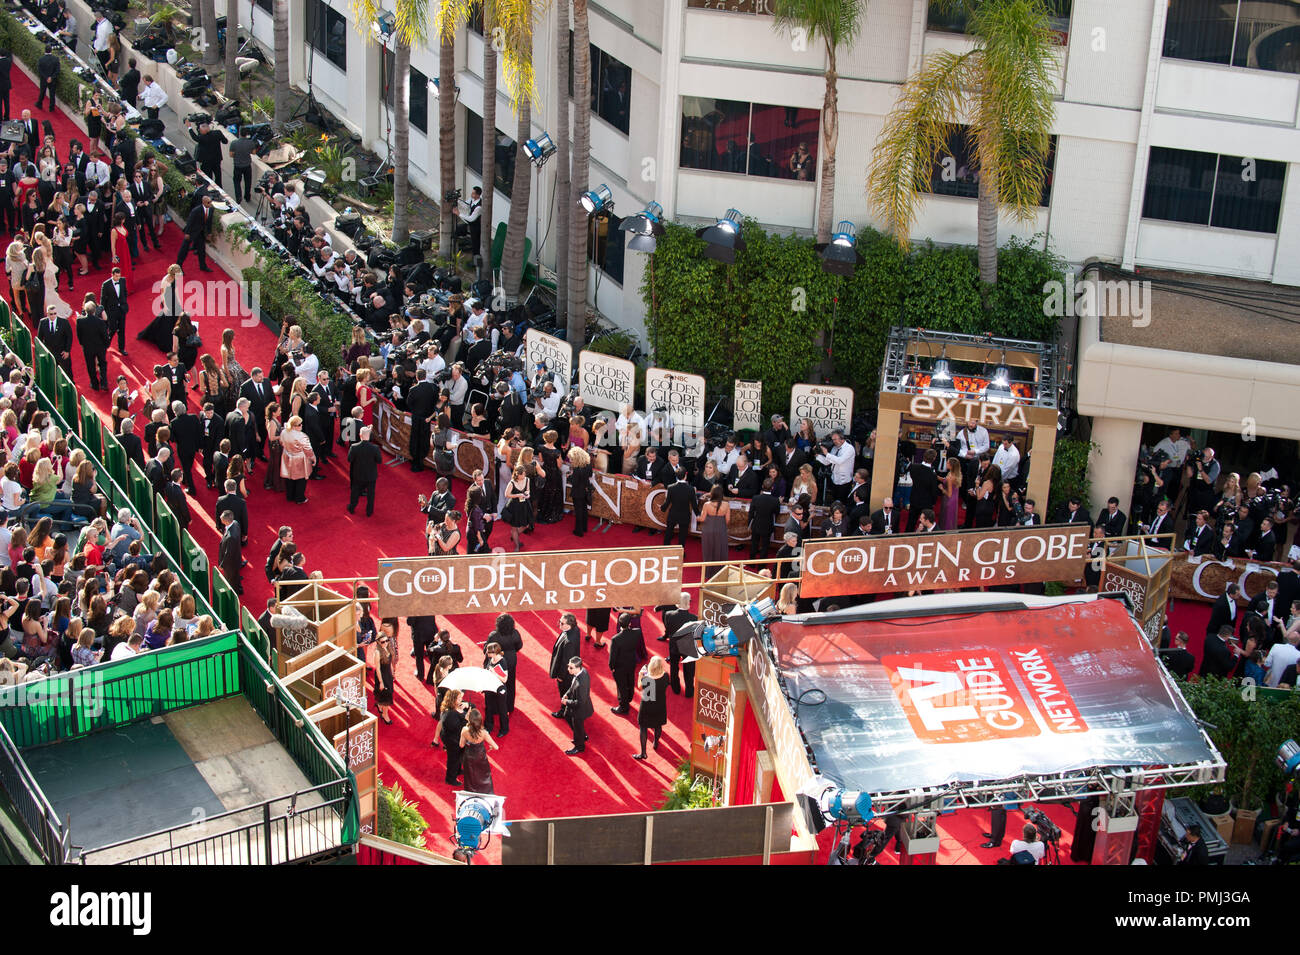 Les célébrités arrivent à la 68e assemblée annuelle Golden Globe Awards au Beverly Hilton de Los Angeles, CA le dimanche, 16 janvier 2011. Référence de fichier #  30825 622 pour un usage éditorial uniquement - Tous droits réservés Banque D'Images